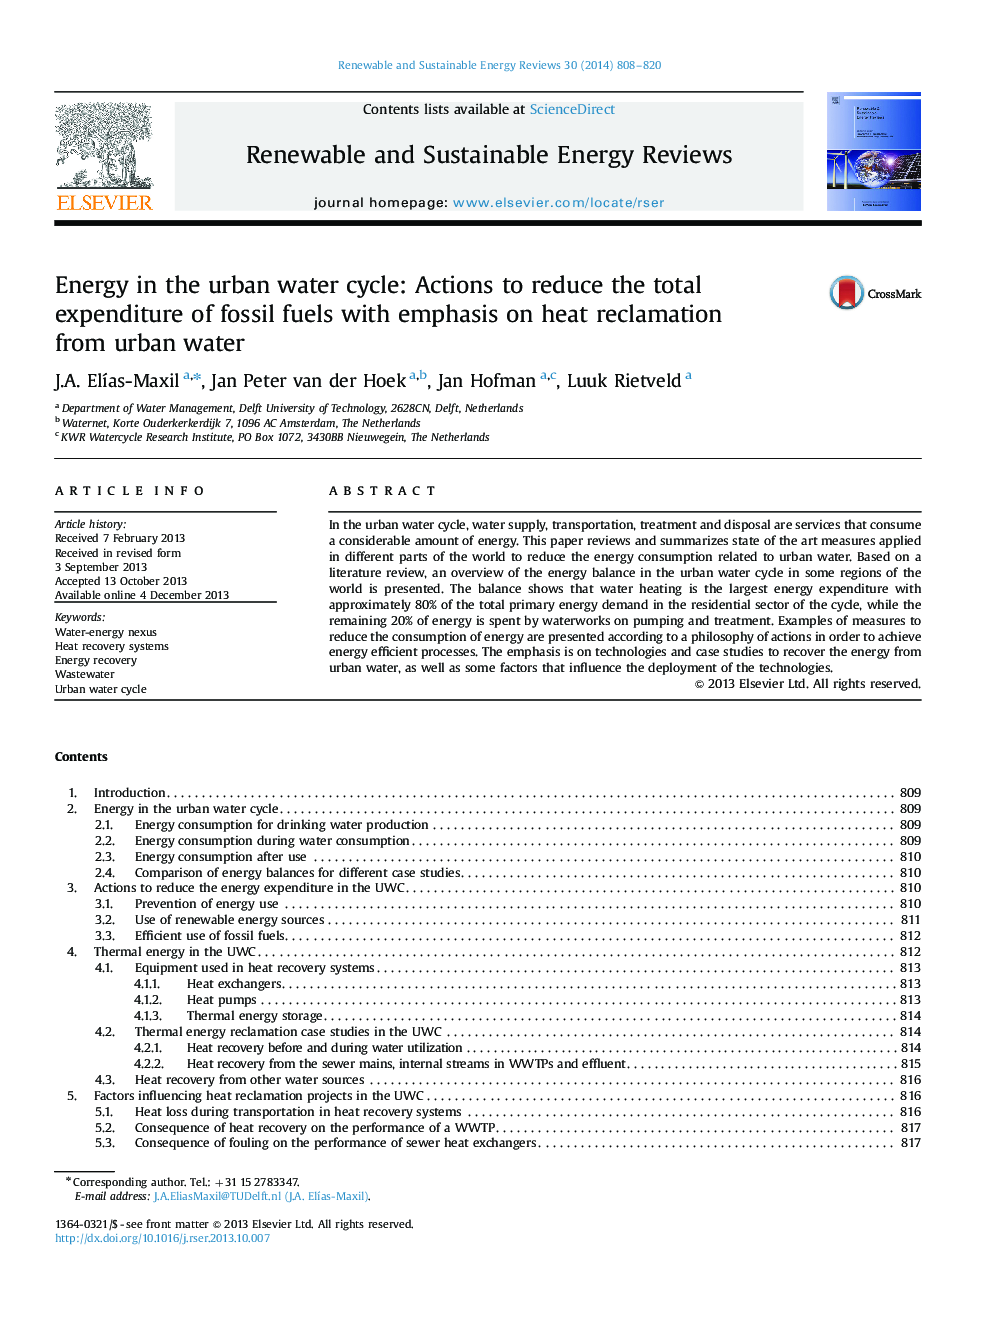 انرژی در چرخه آب شهری: اقدامات برای کاهش کل هزینه سوخت های فسیلی با تاکید بر احیاء گرما از آب شهری 